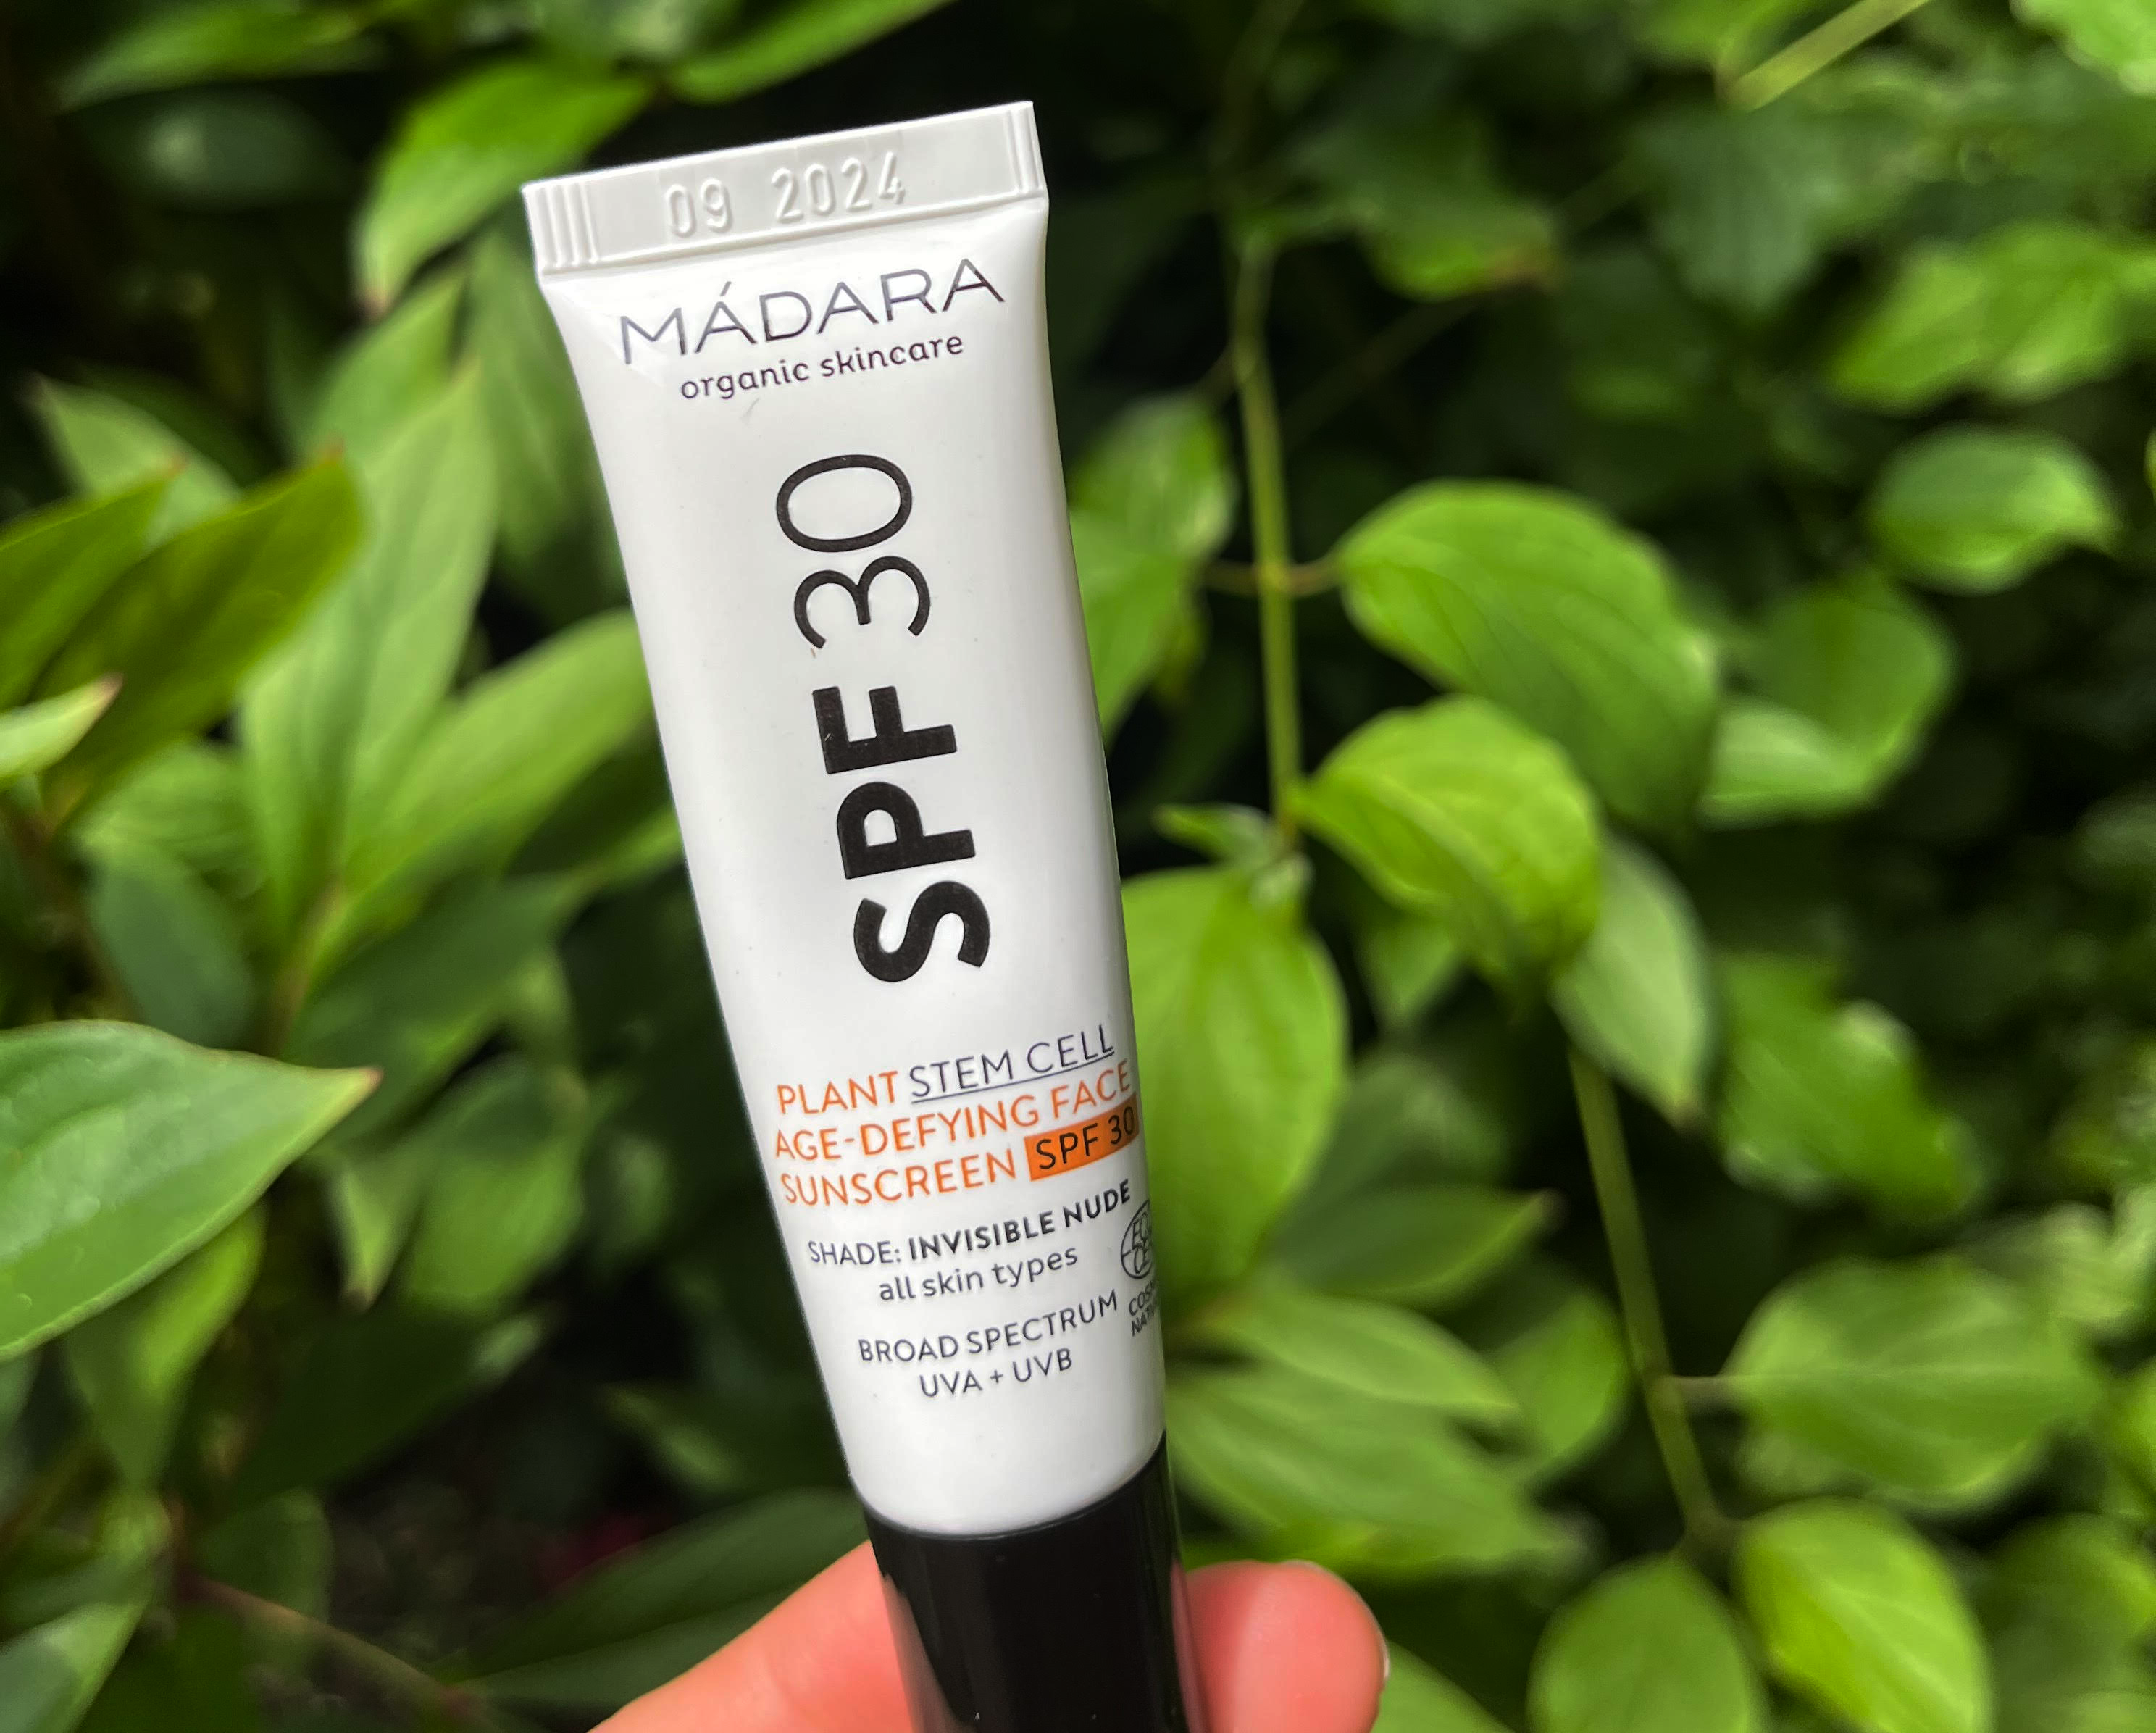 Madara Age-Defying Face Sunscreen SPF 30